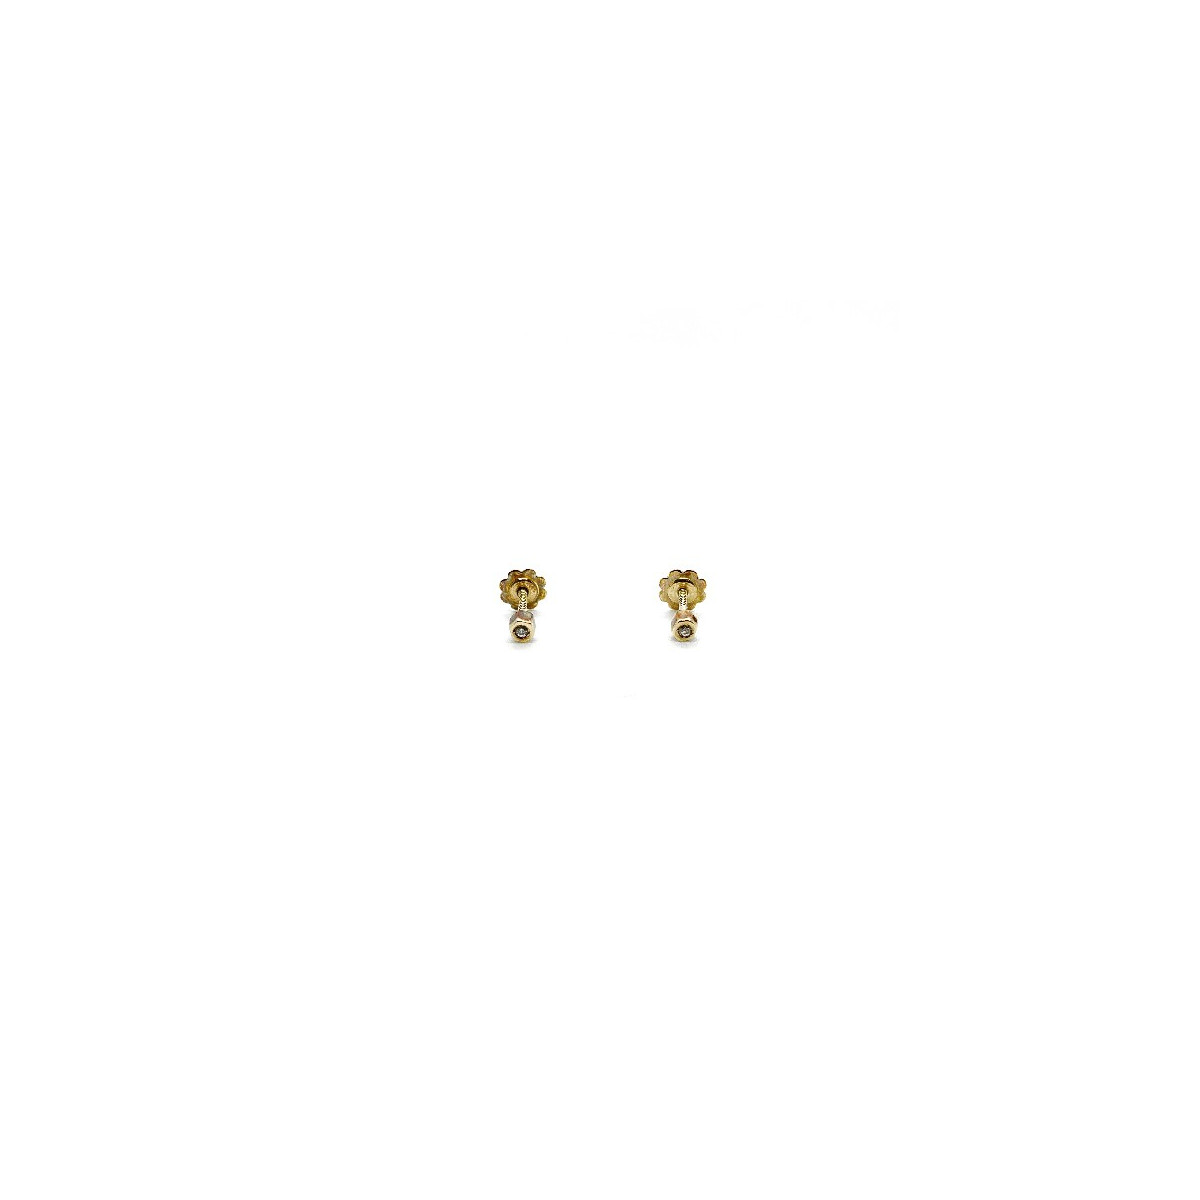 ZIRCO GOLD CLIMENT 1890 EARRINGS - D-5020R/Z